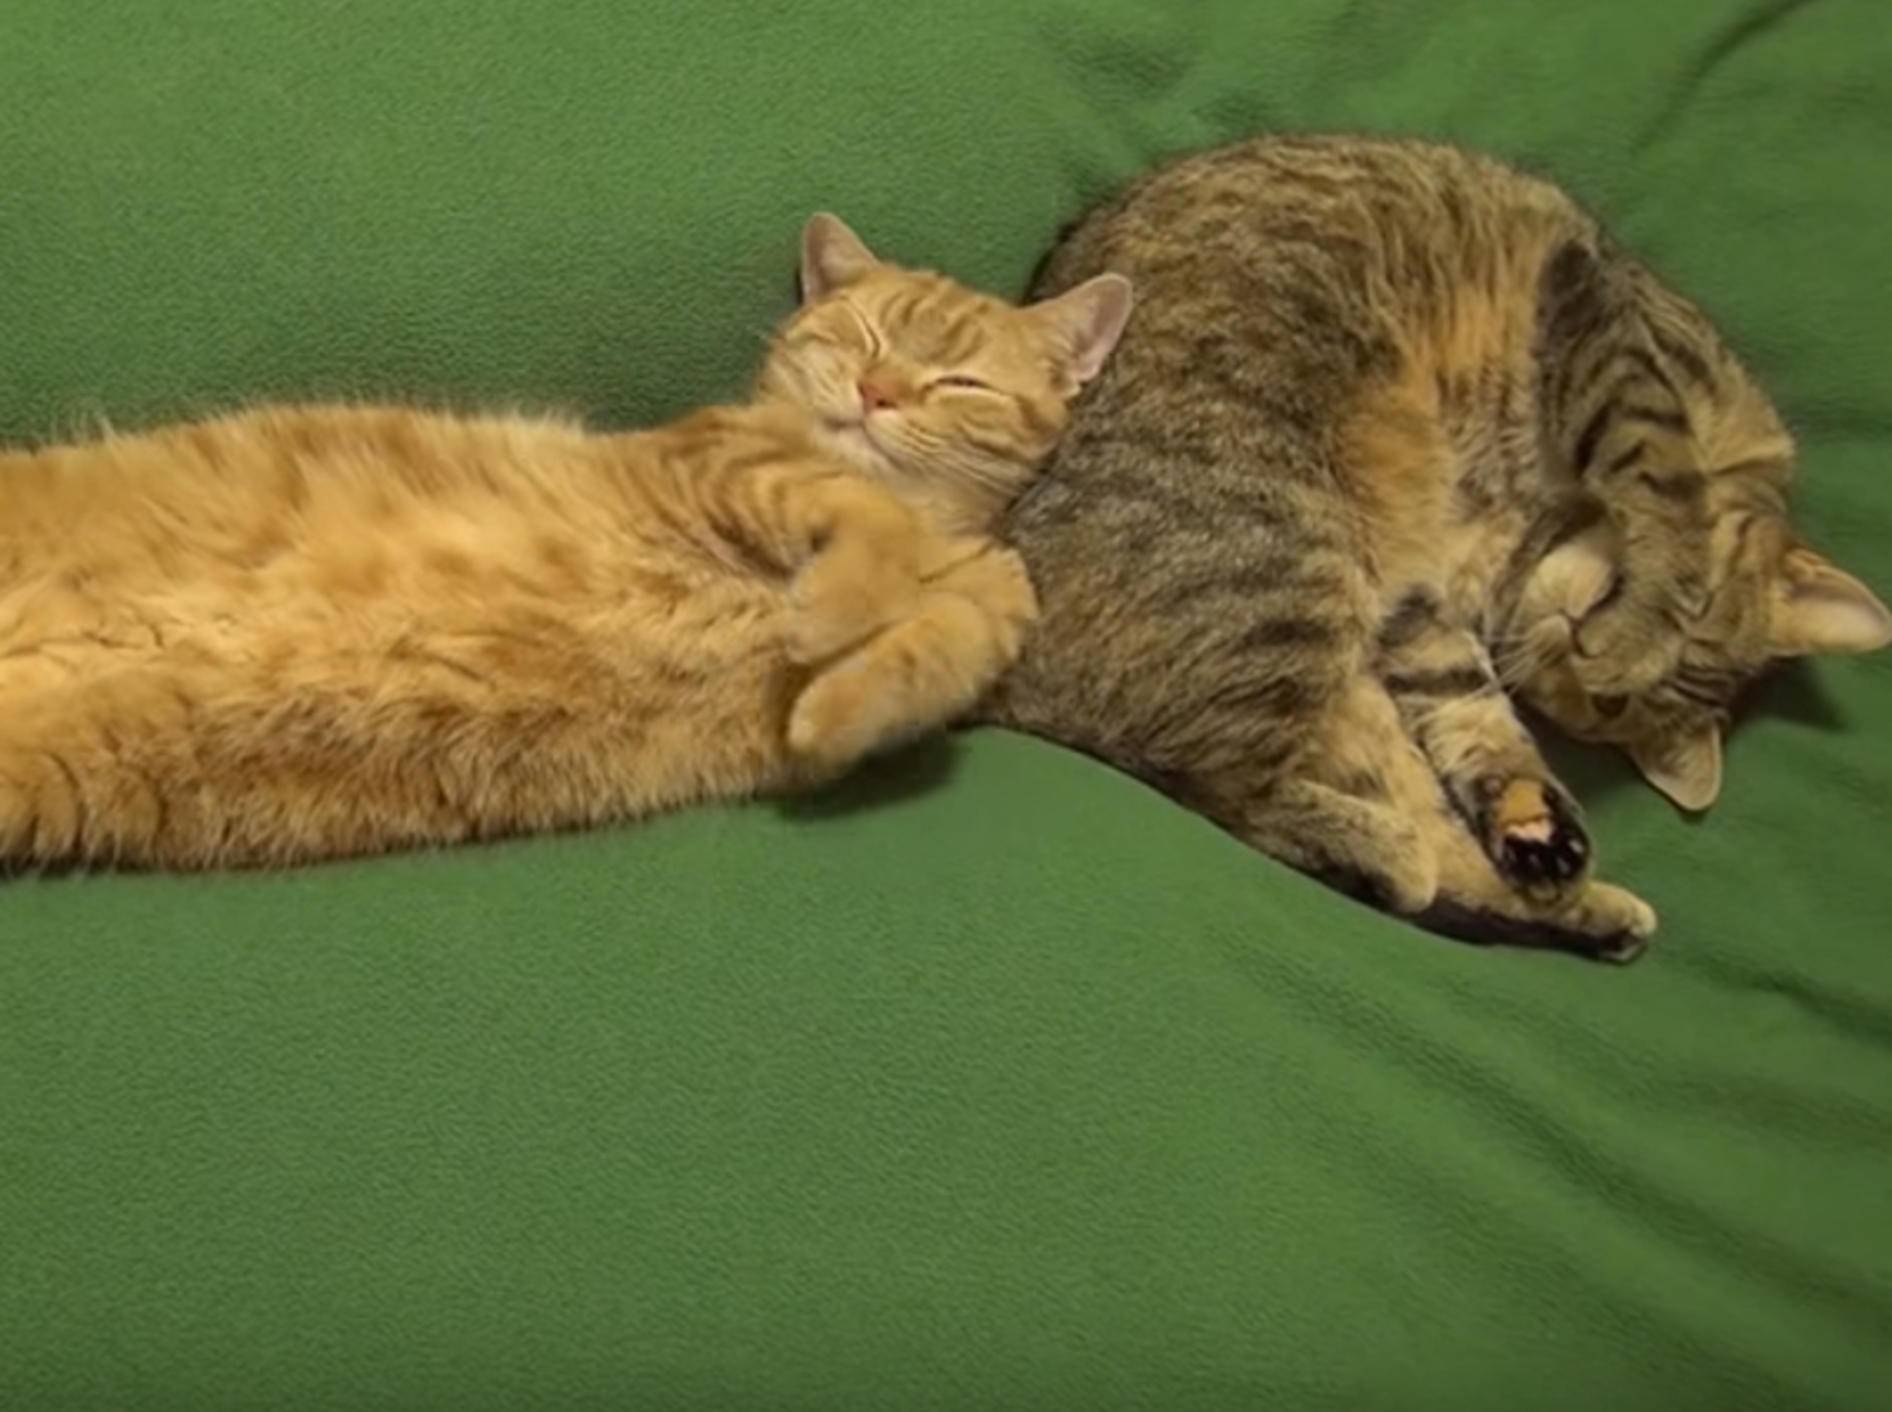 Schlaf, Kätzchen, schlaf! So machen Katzen es sich gemütlich – Bild: YouTube / 10 Cats.